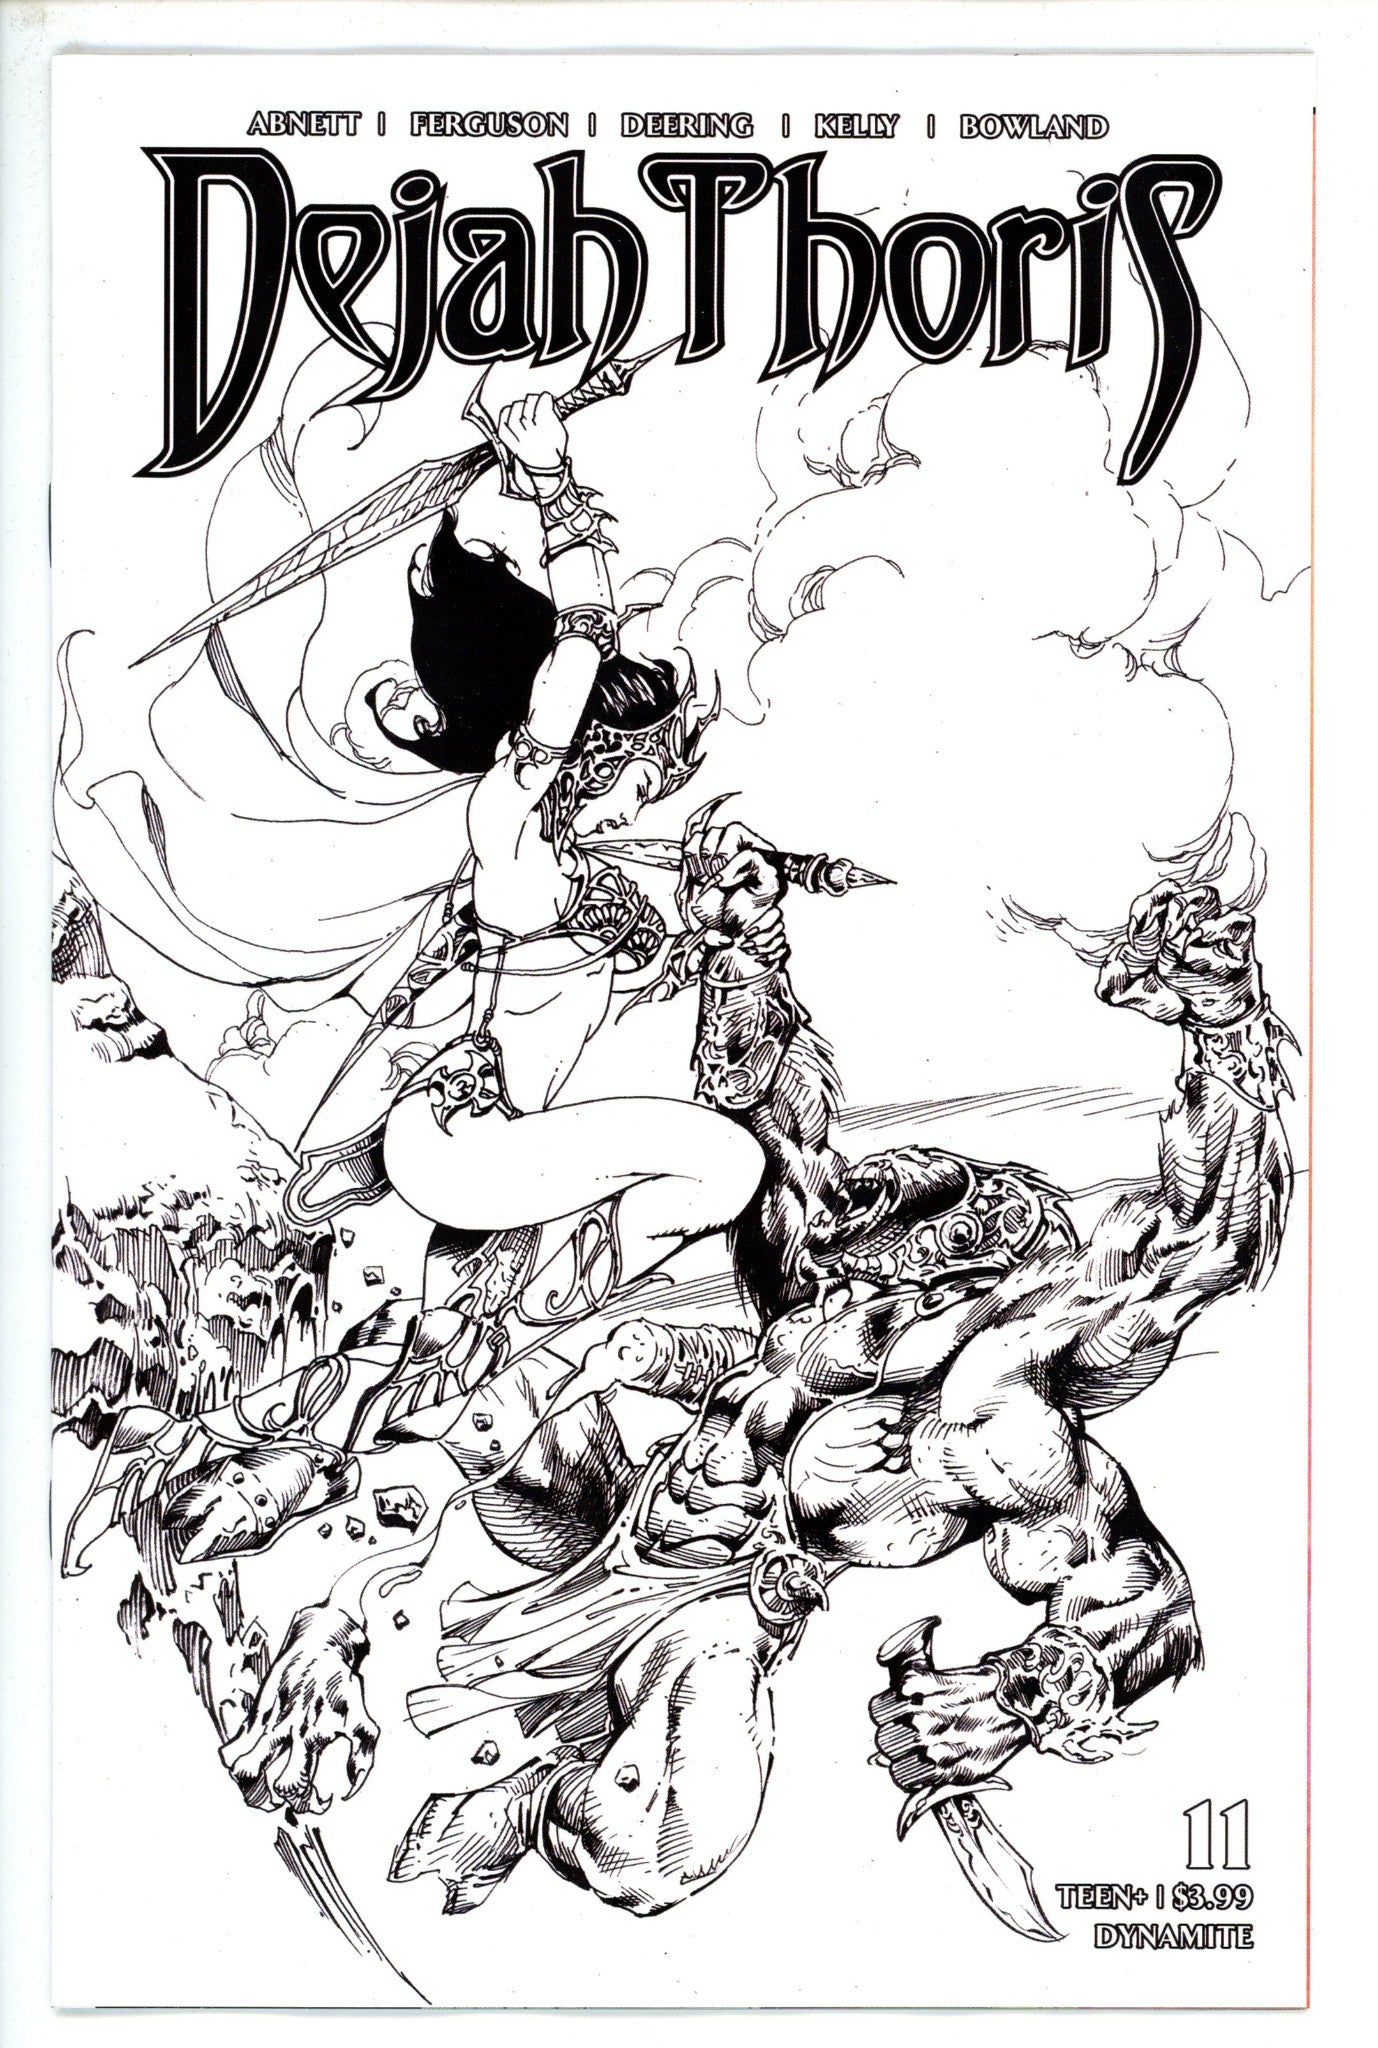 Dejah Thoris Vol 3 11 Castro Variant-Dynamite-CaptCan Comics Inc